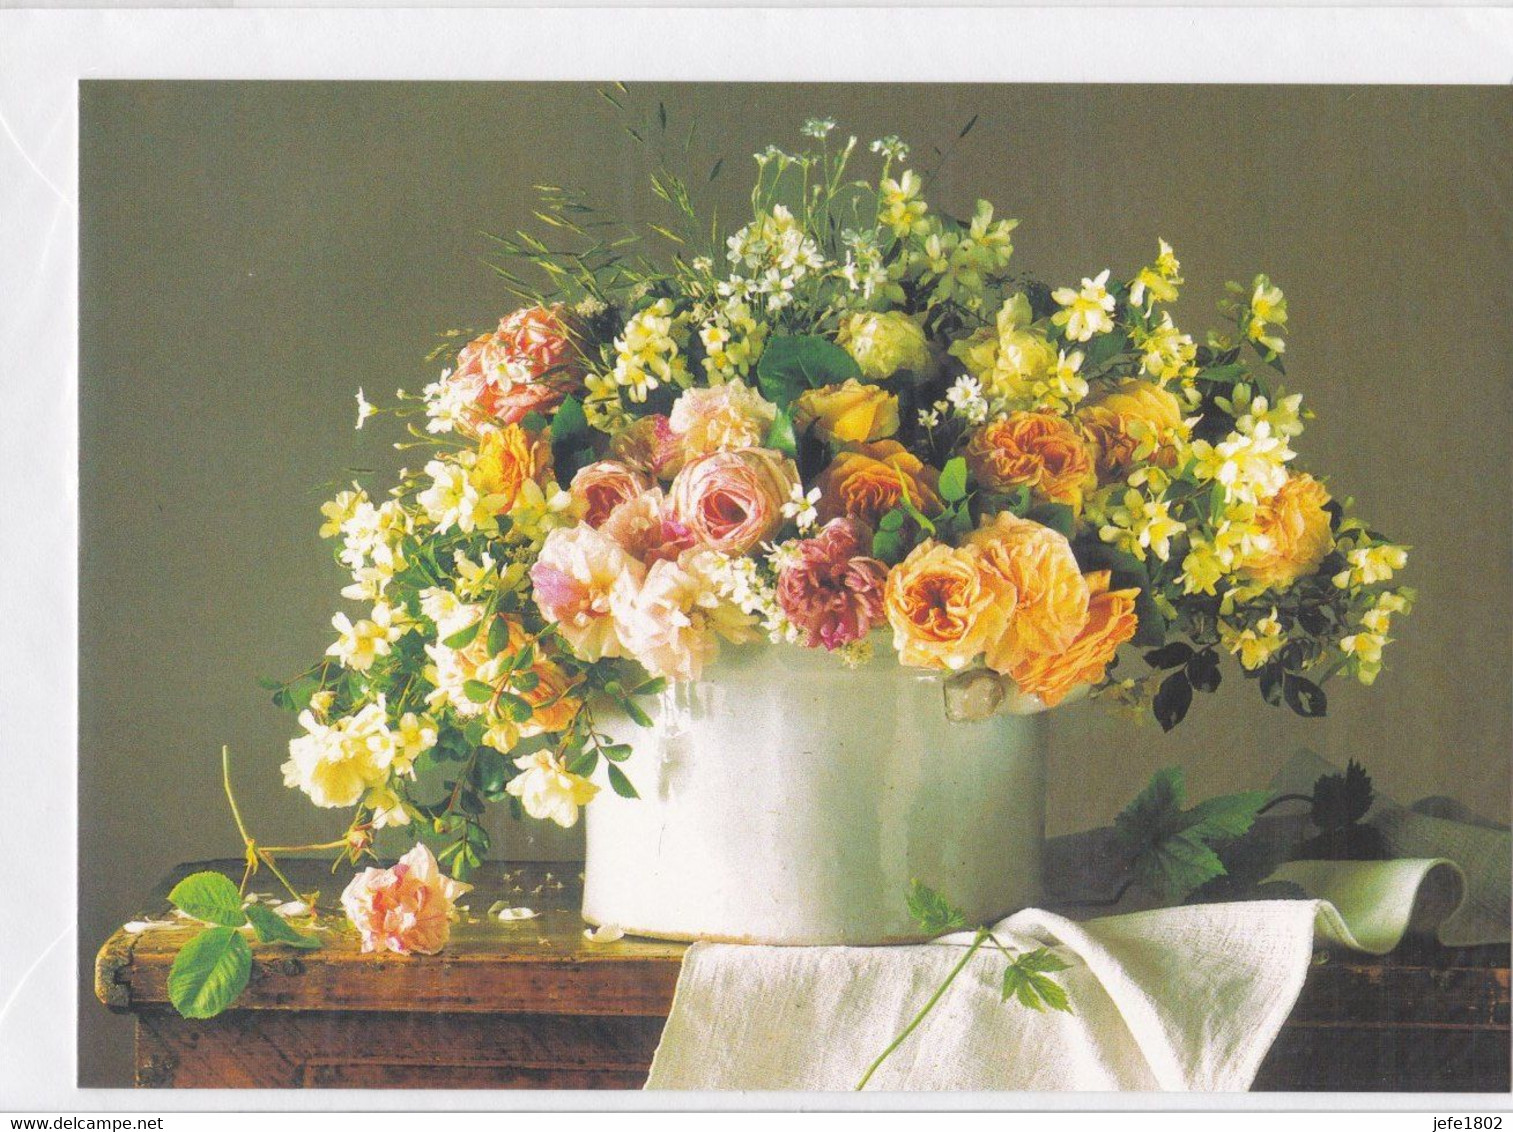 Postogram 125 / 97 - Boeket - Fotostock - Flowers - Postogram